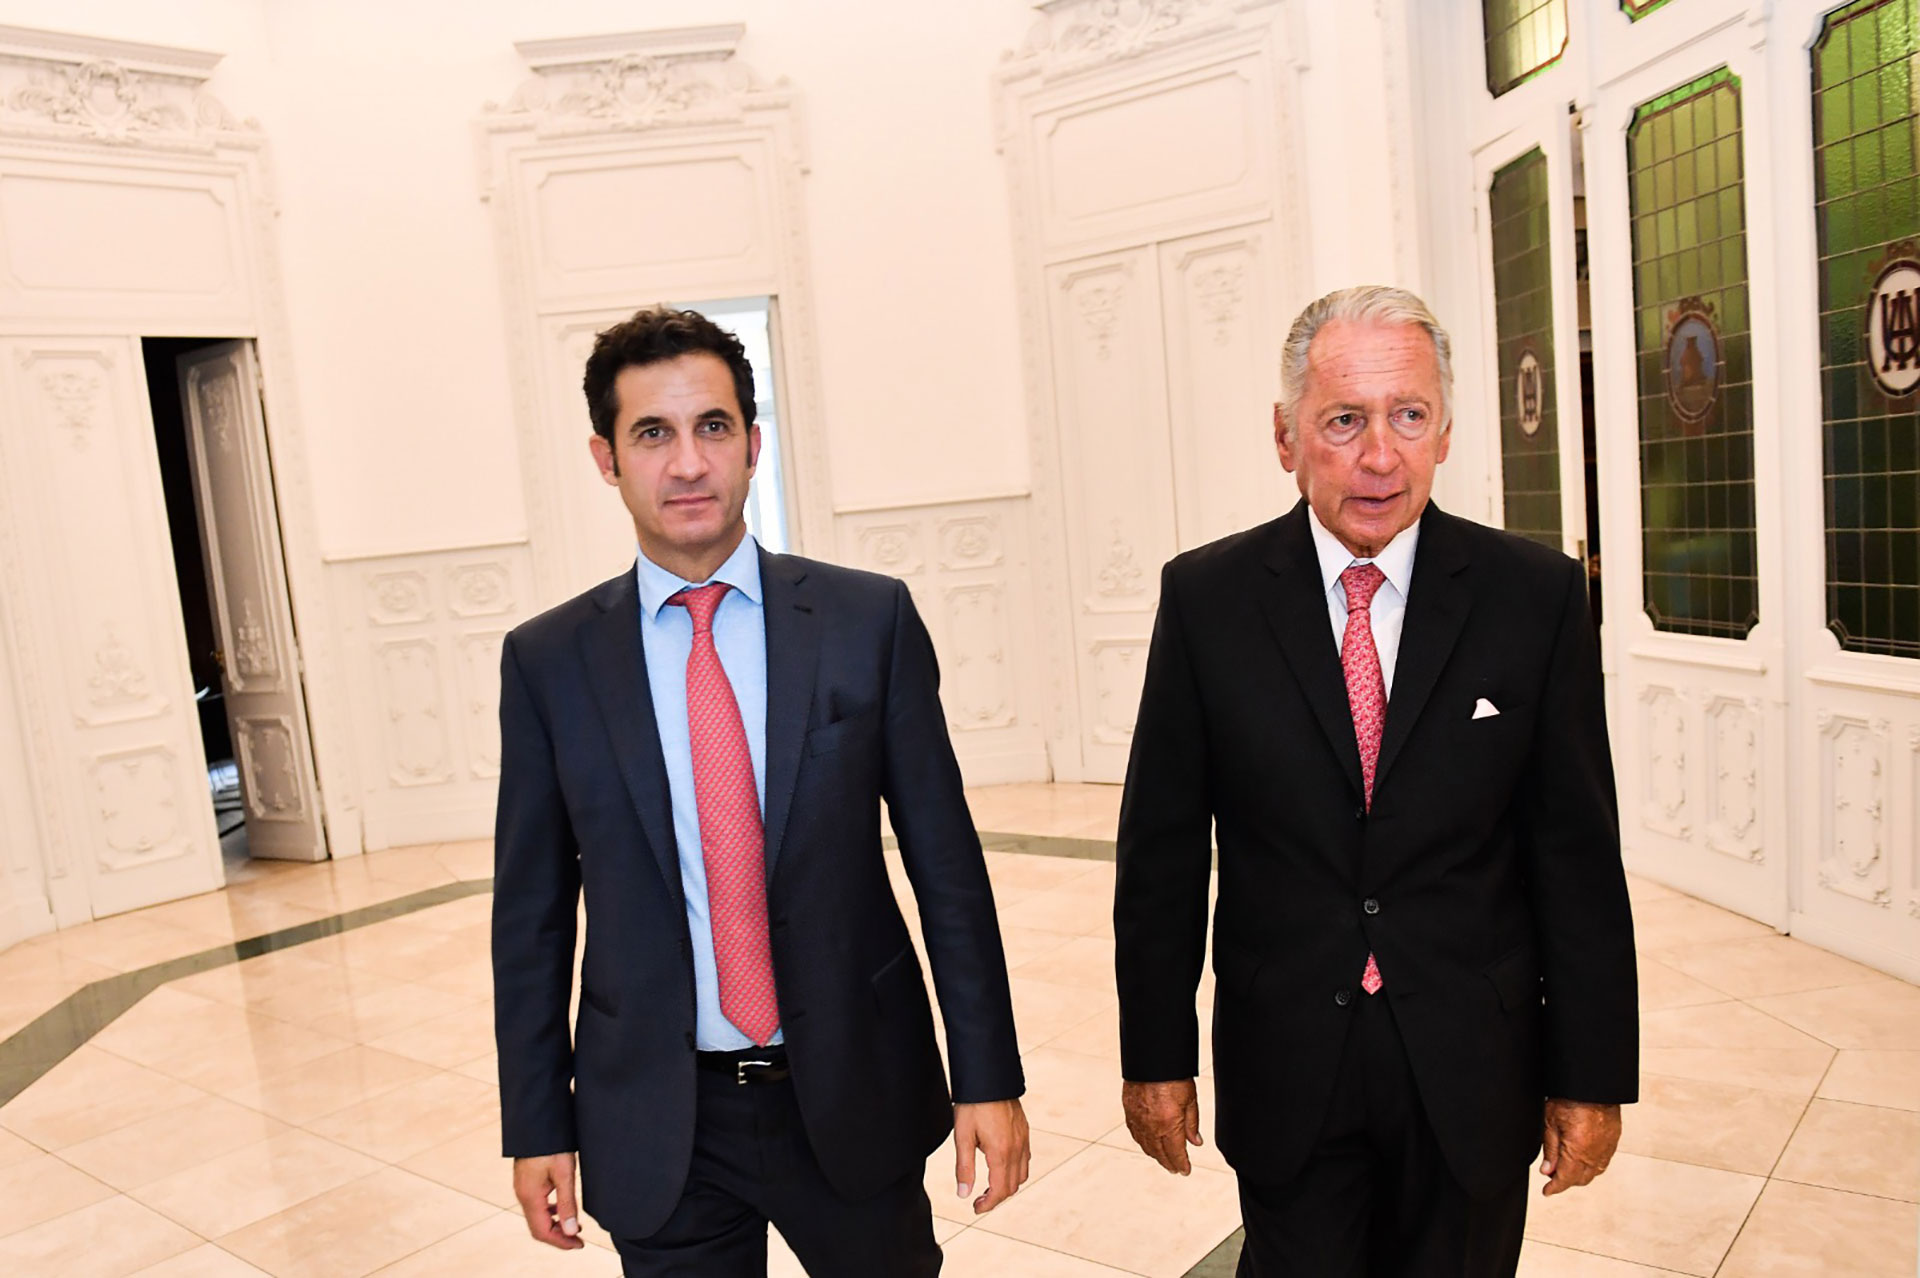 El secretario de Comercio Matías Tombolini se reunió recientemente con la conducción de la Unión Industrial Argentina, con las SIRAs como uno de los temas de agenda